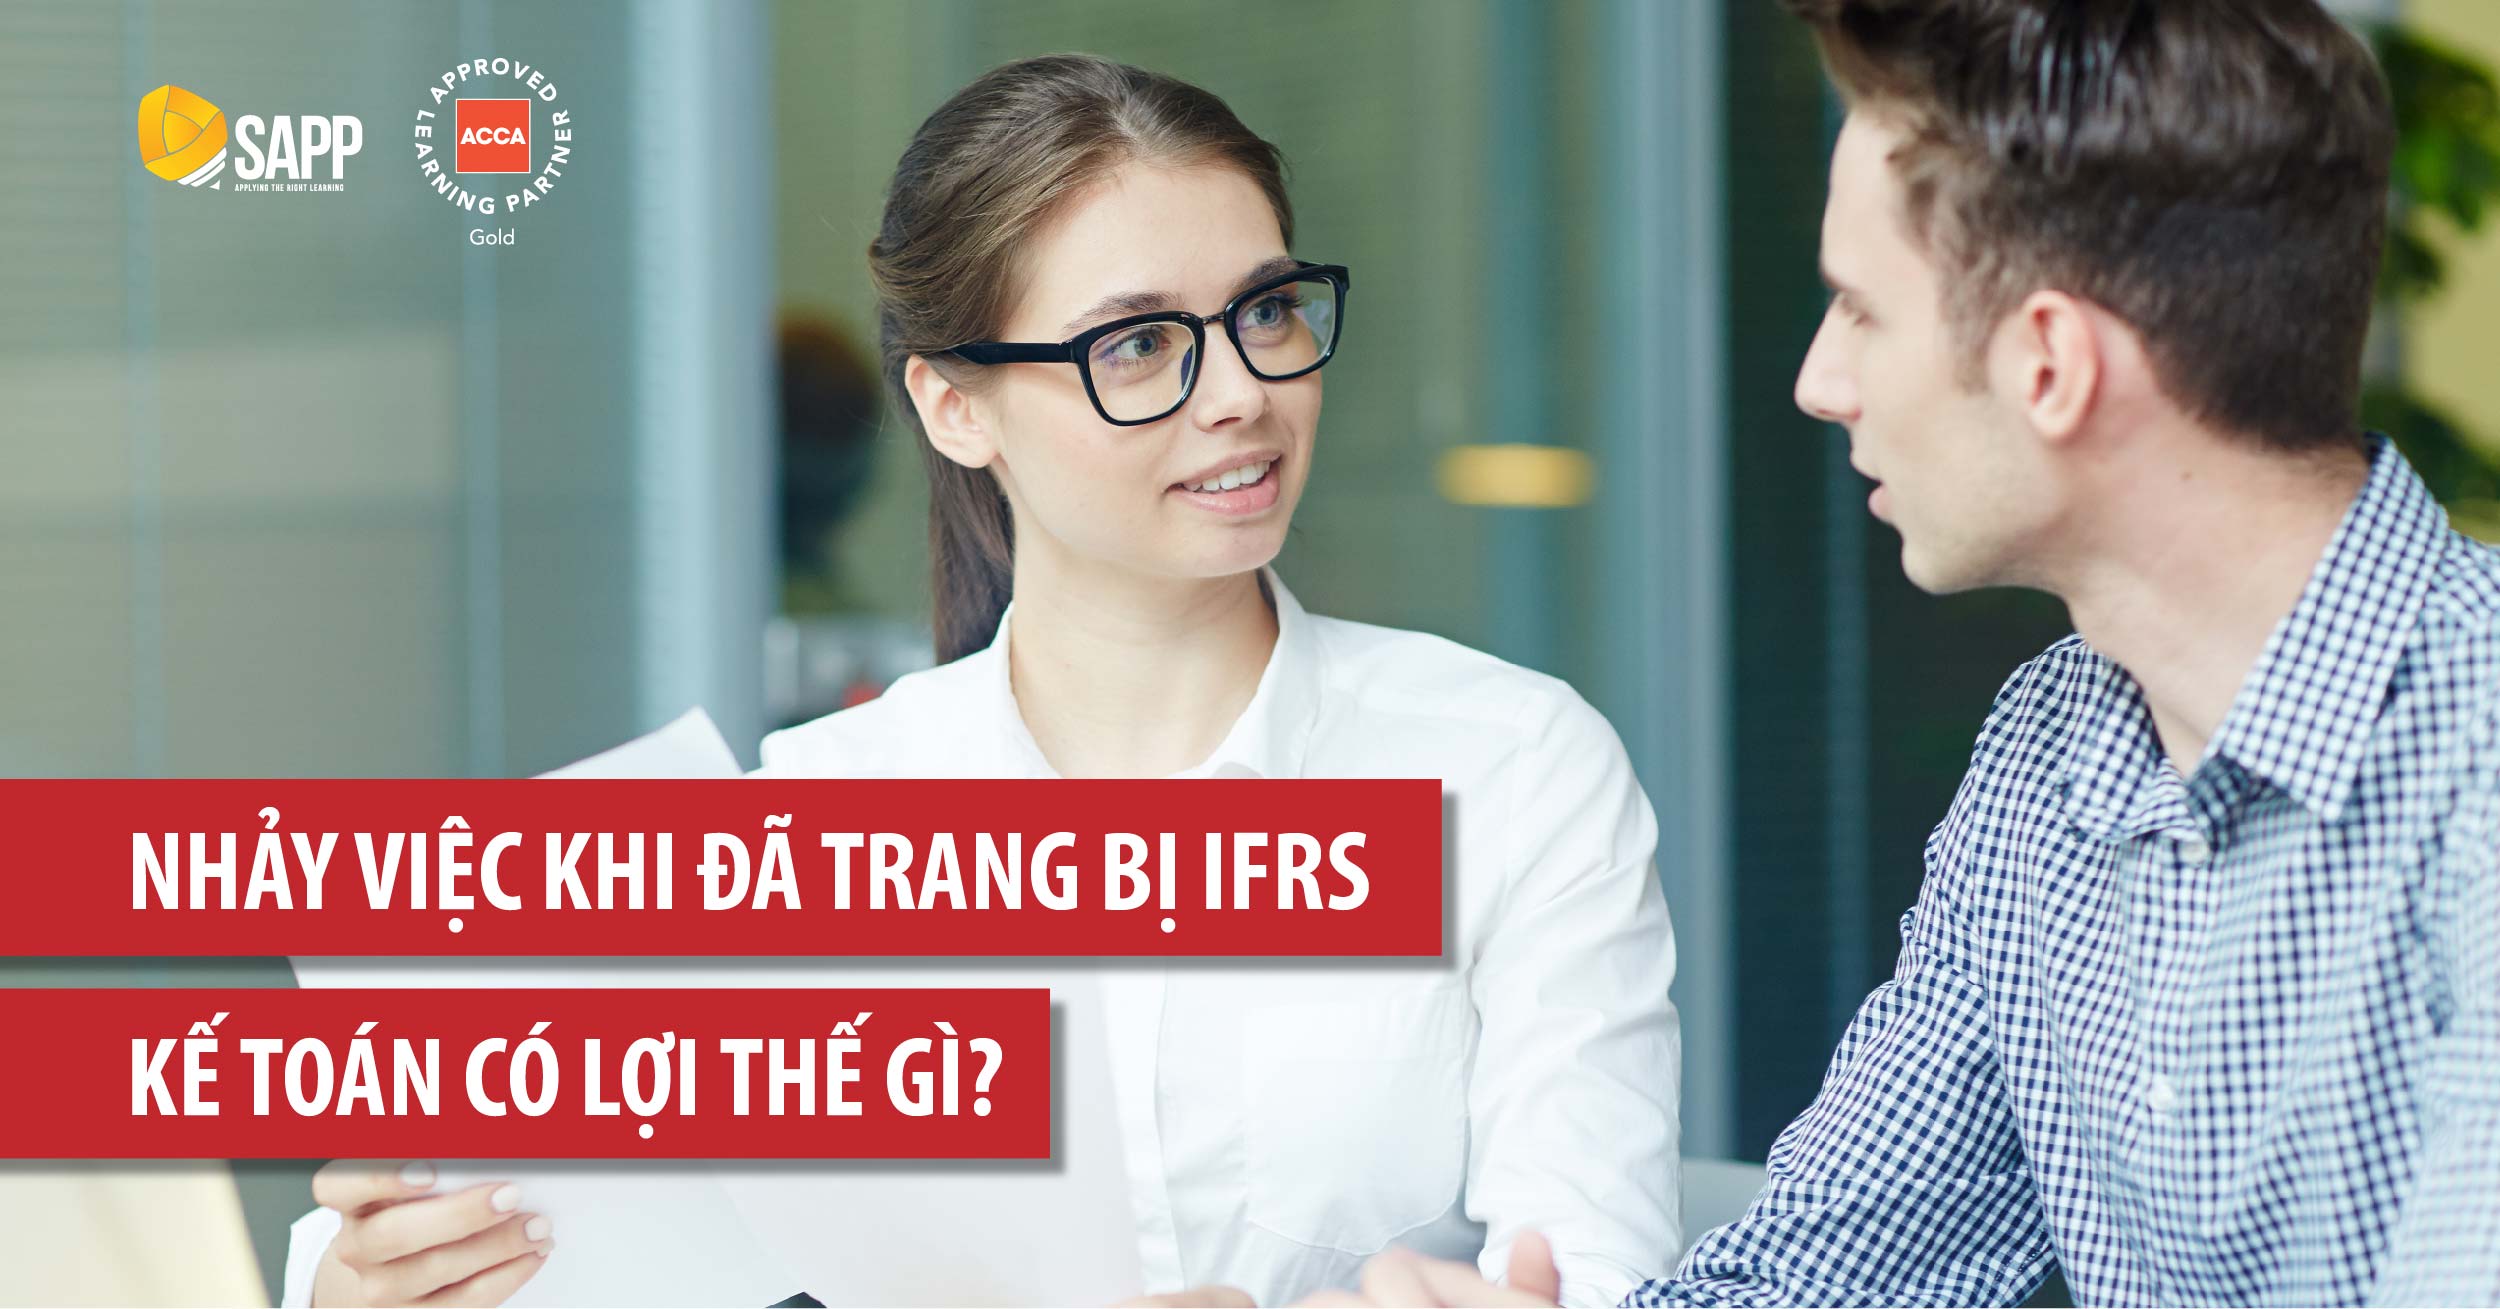 Nhảy việc khi đã trang bị IFRS, kế toán có lợi thế gì?